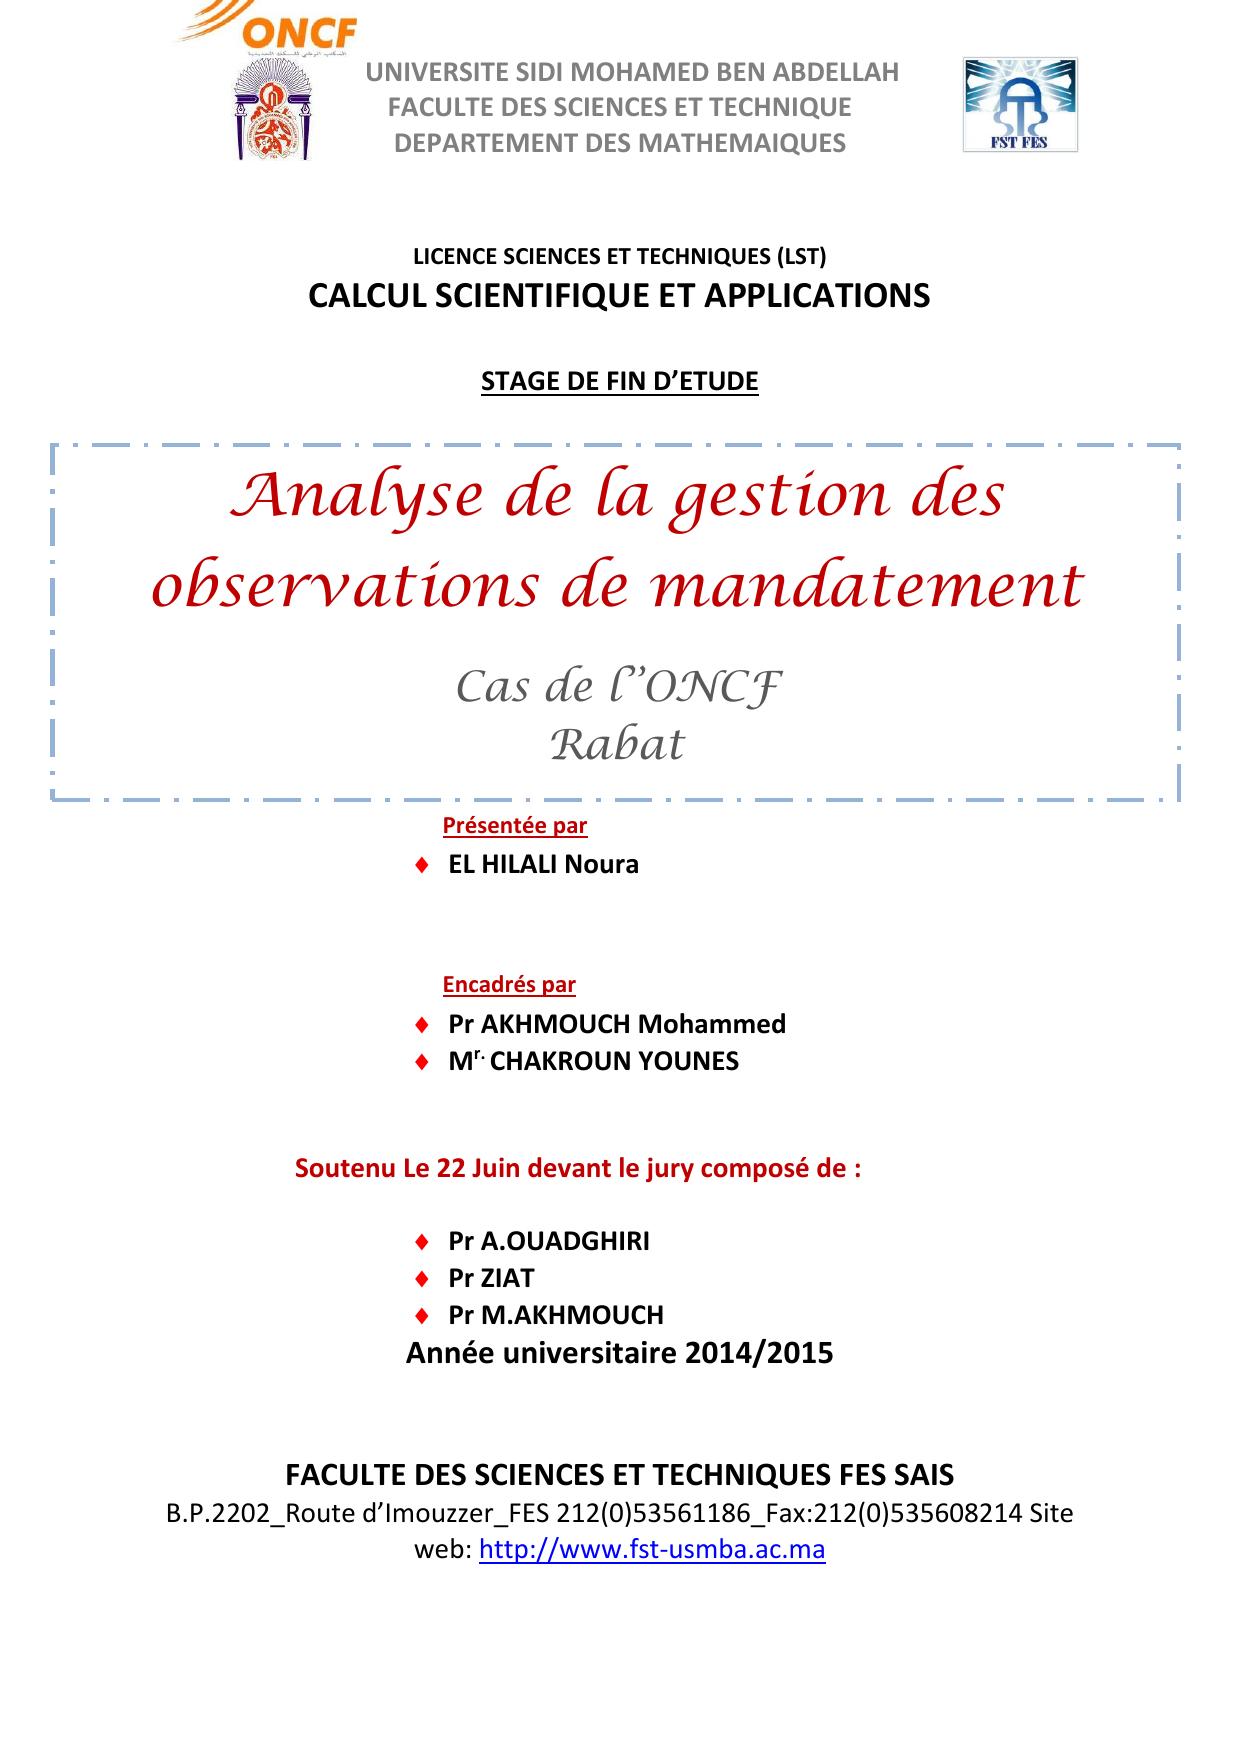 Analyse de la gestion des observations de mandatement Cas de l’ONCF Rabat